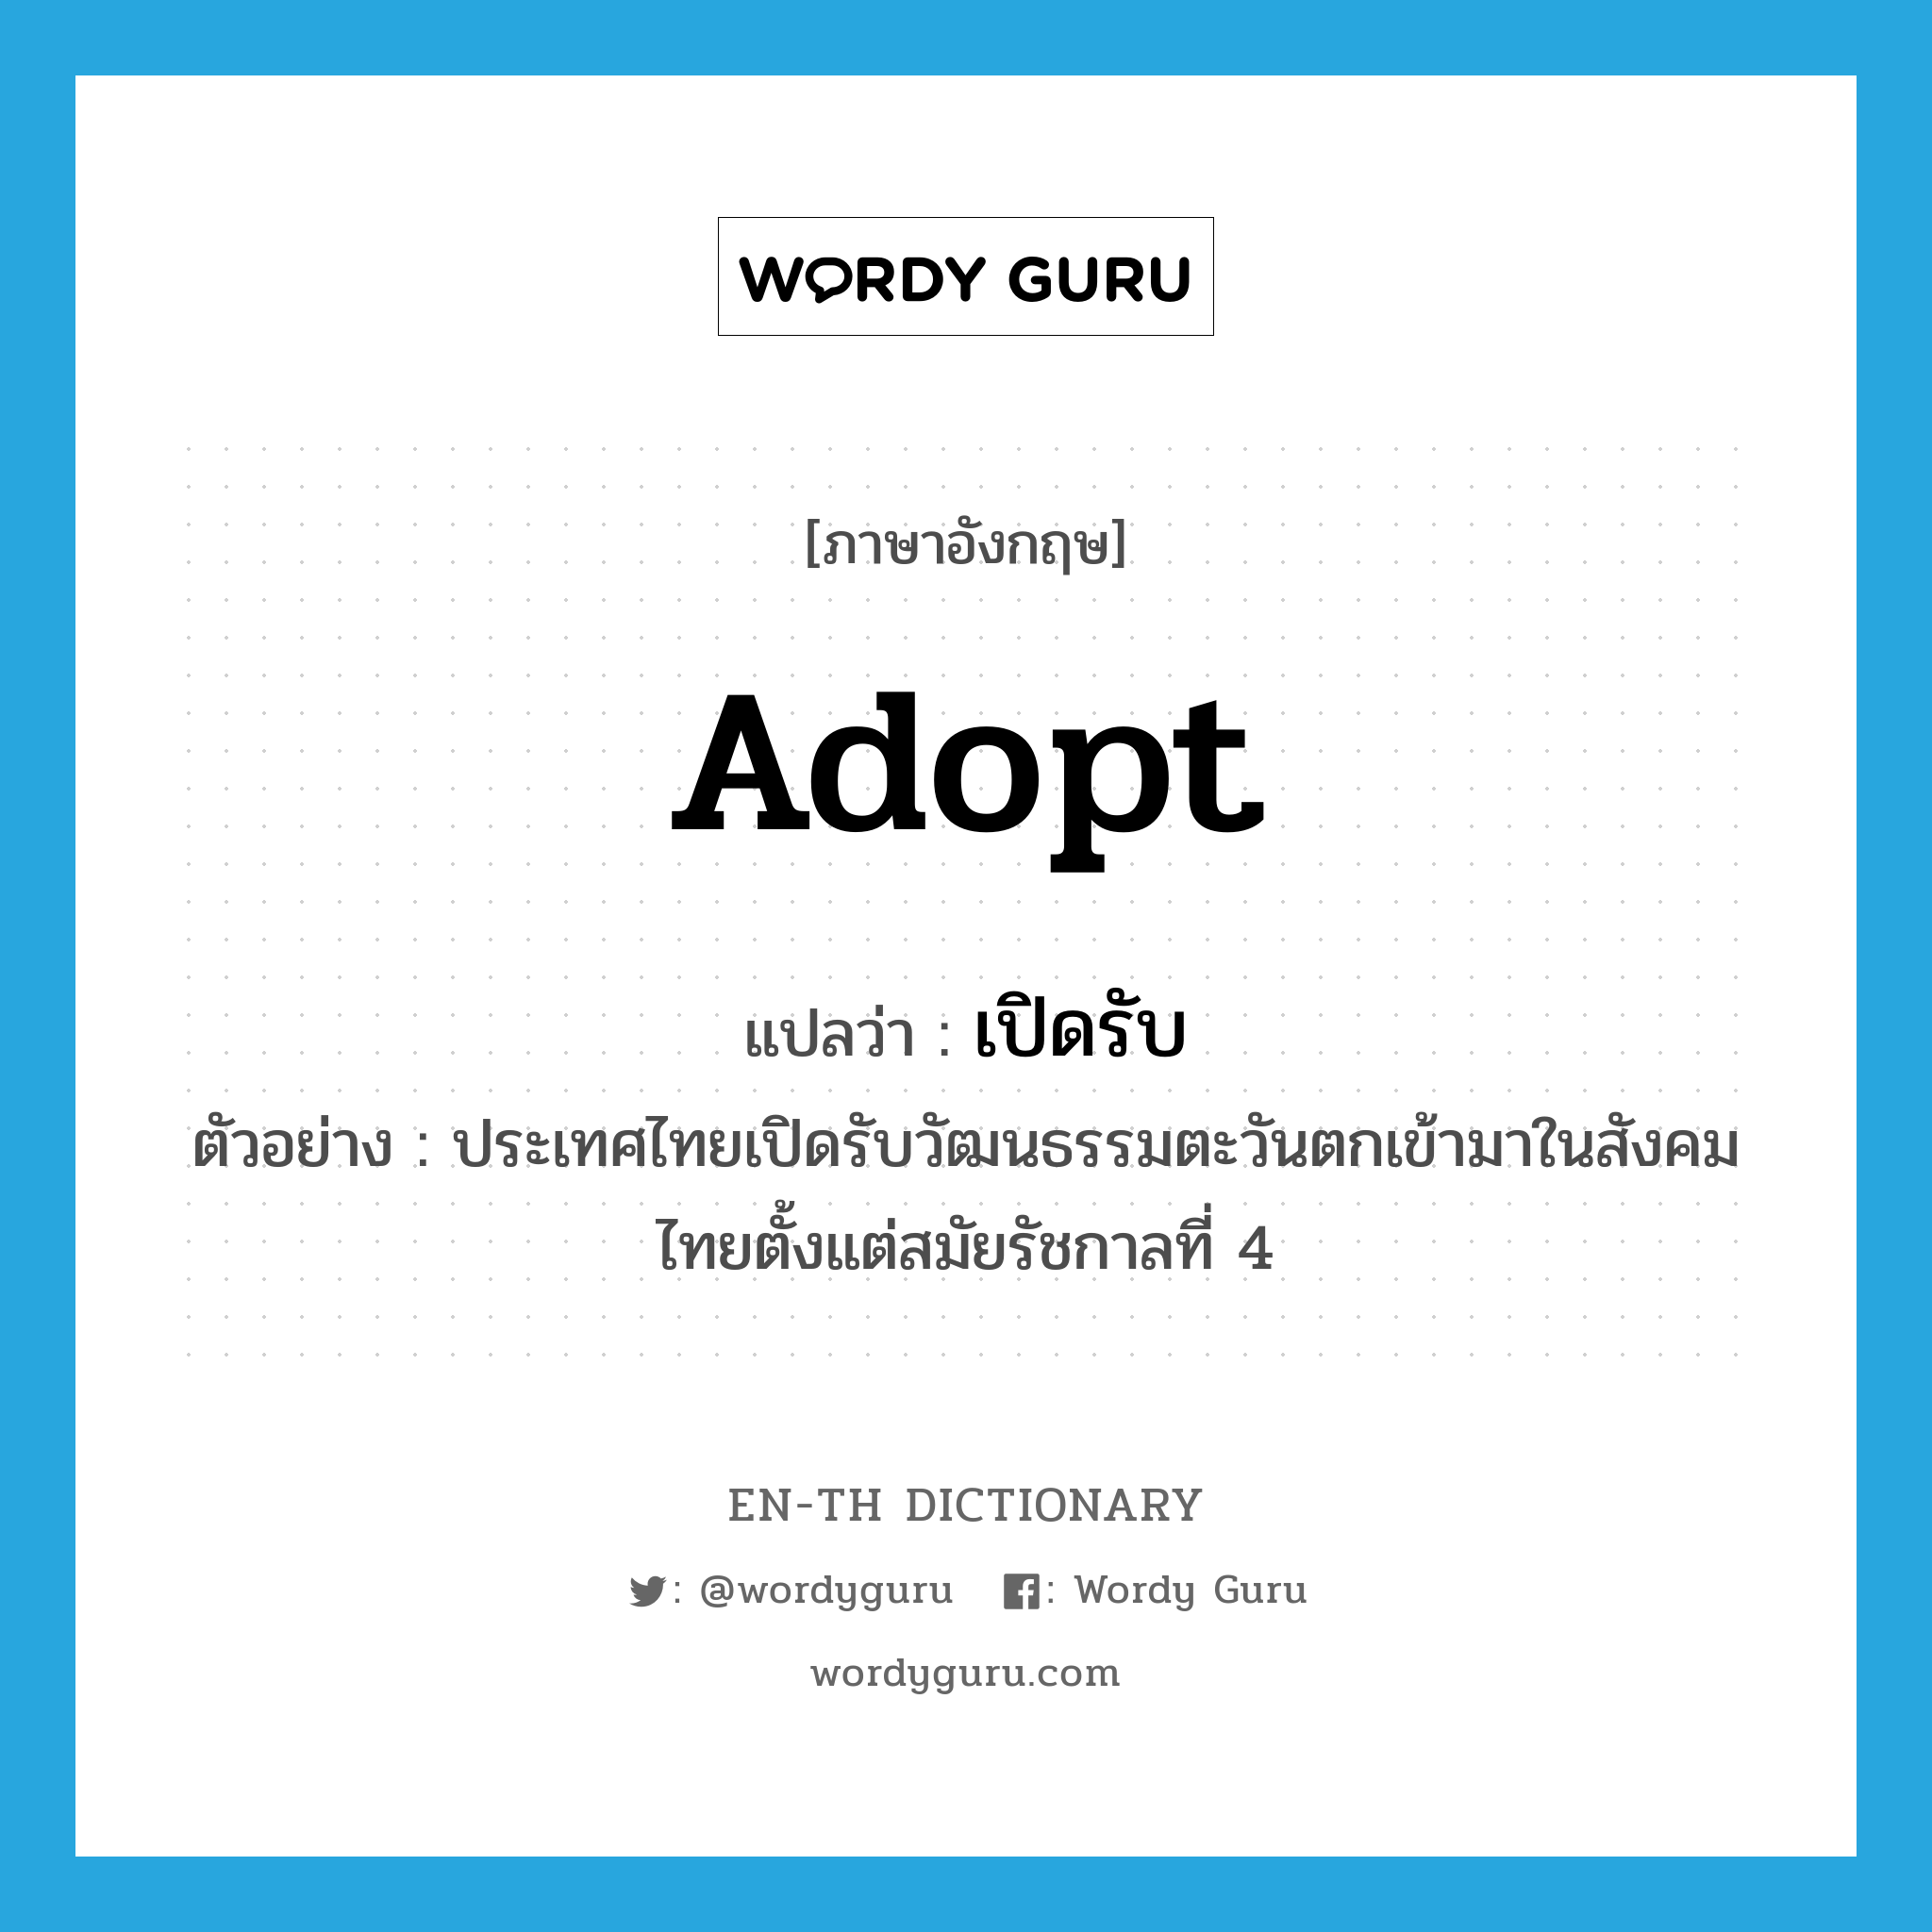 adopt แปลว่า?, คำศัพท์ภาษาอังกฤษ adopt แปลว่า เปิดรับ ประเภท V ตัวอย่าง ประเทศไทยเปิดรับวัฒนธรรมตะวันตกเข้ามาในสังคมไทยตั้งแต่สมัยรัชกาลที่ 4 หมวด V